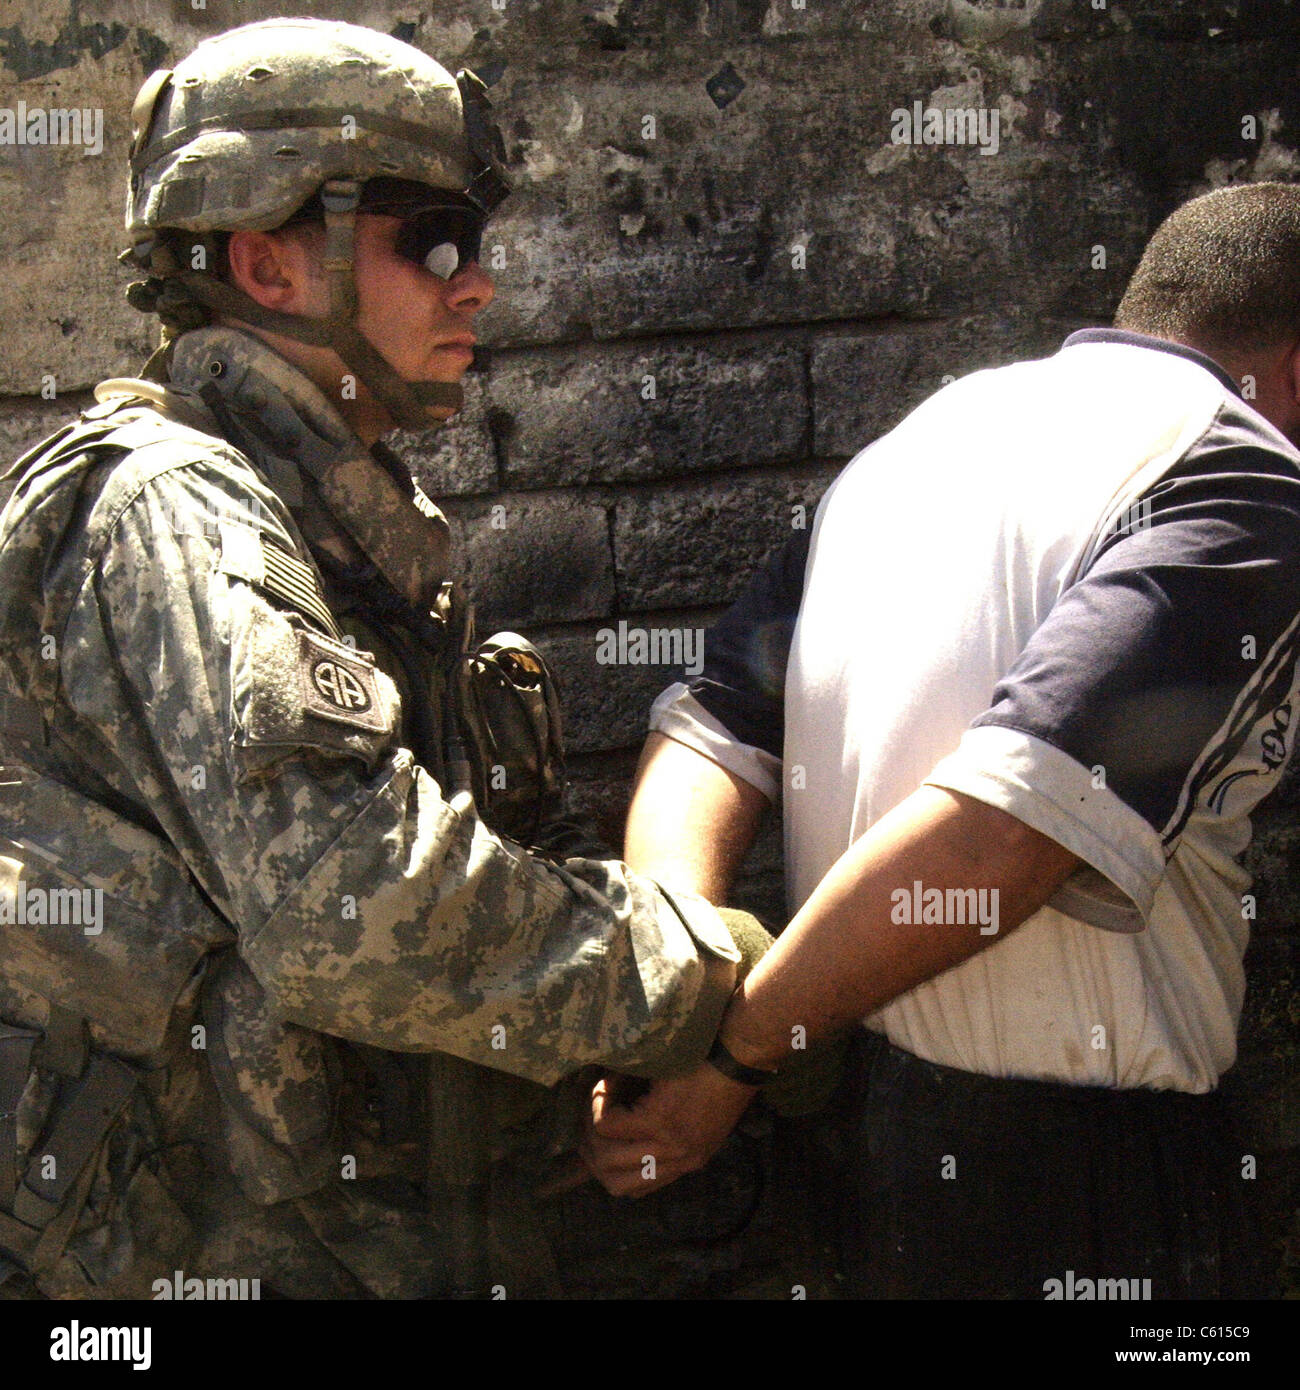 Noi bracciali soldato un iracheno uomo sospettato per la fabbricazione di ordigni esplosivi artigianali durante l'Iraq insurrezione. Mosul Iraq. Il 5 giugno 2007. (BSLOC 2011 12 147) Foto Stock